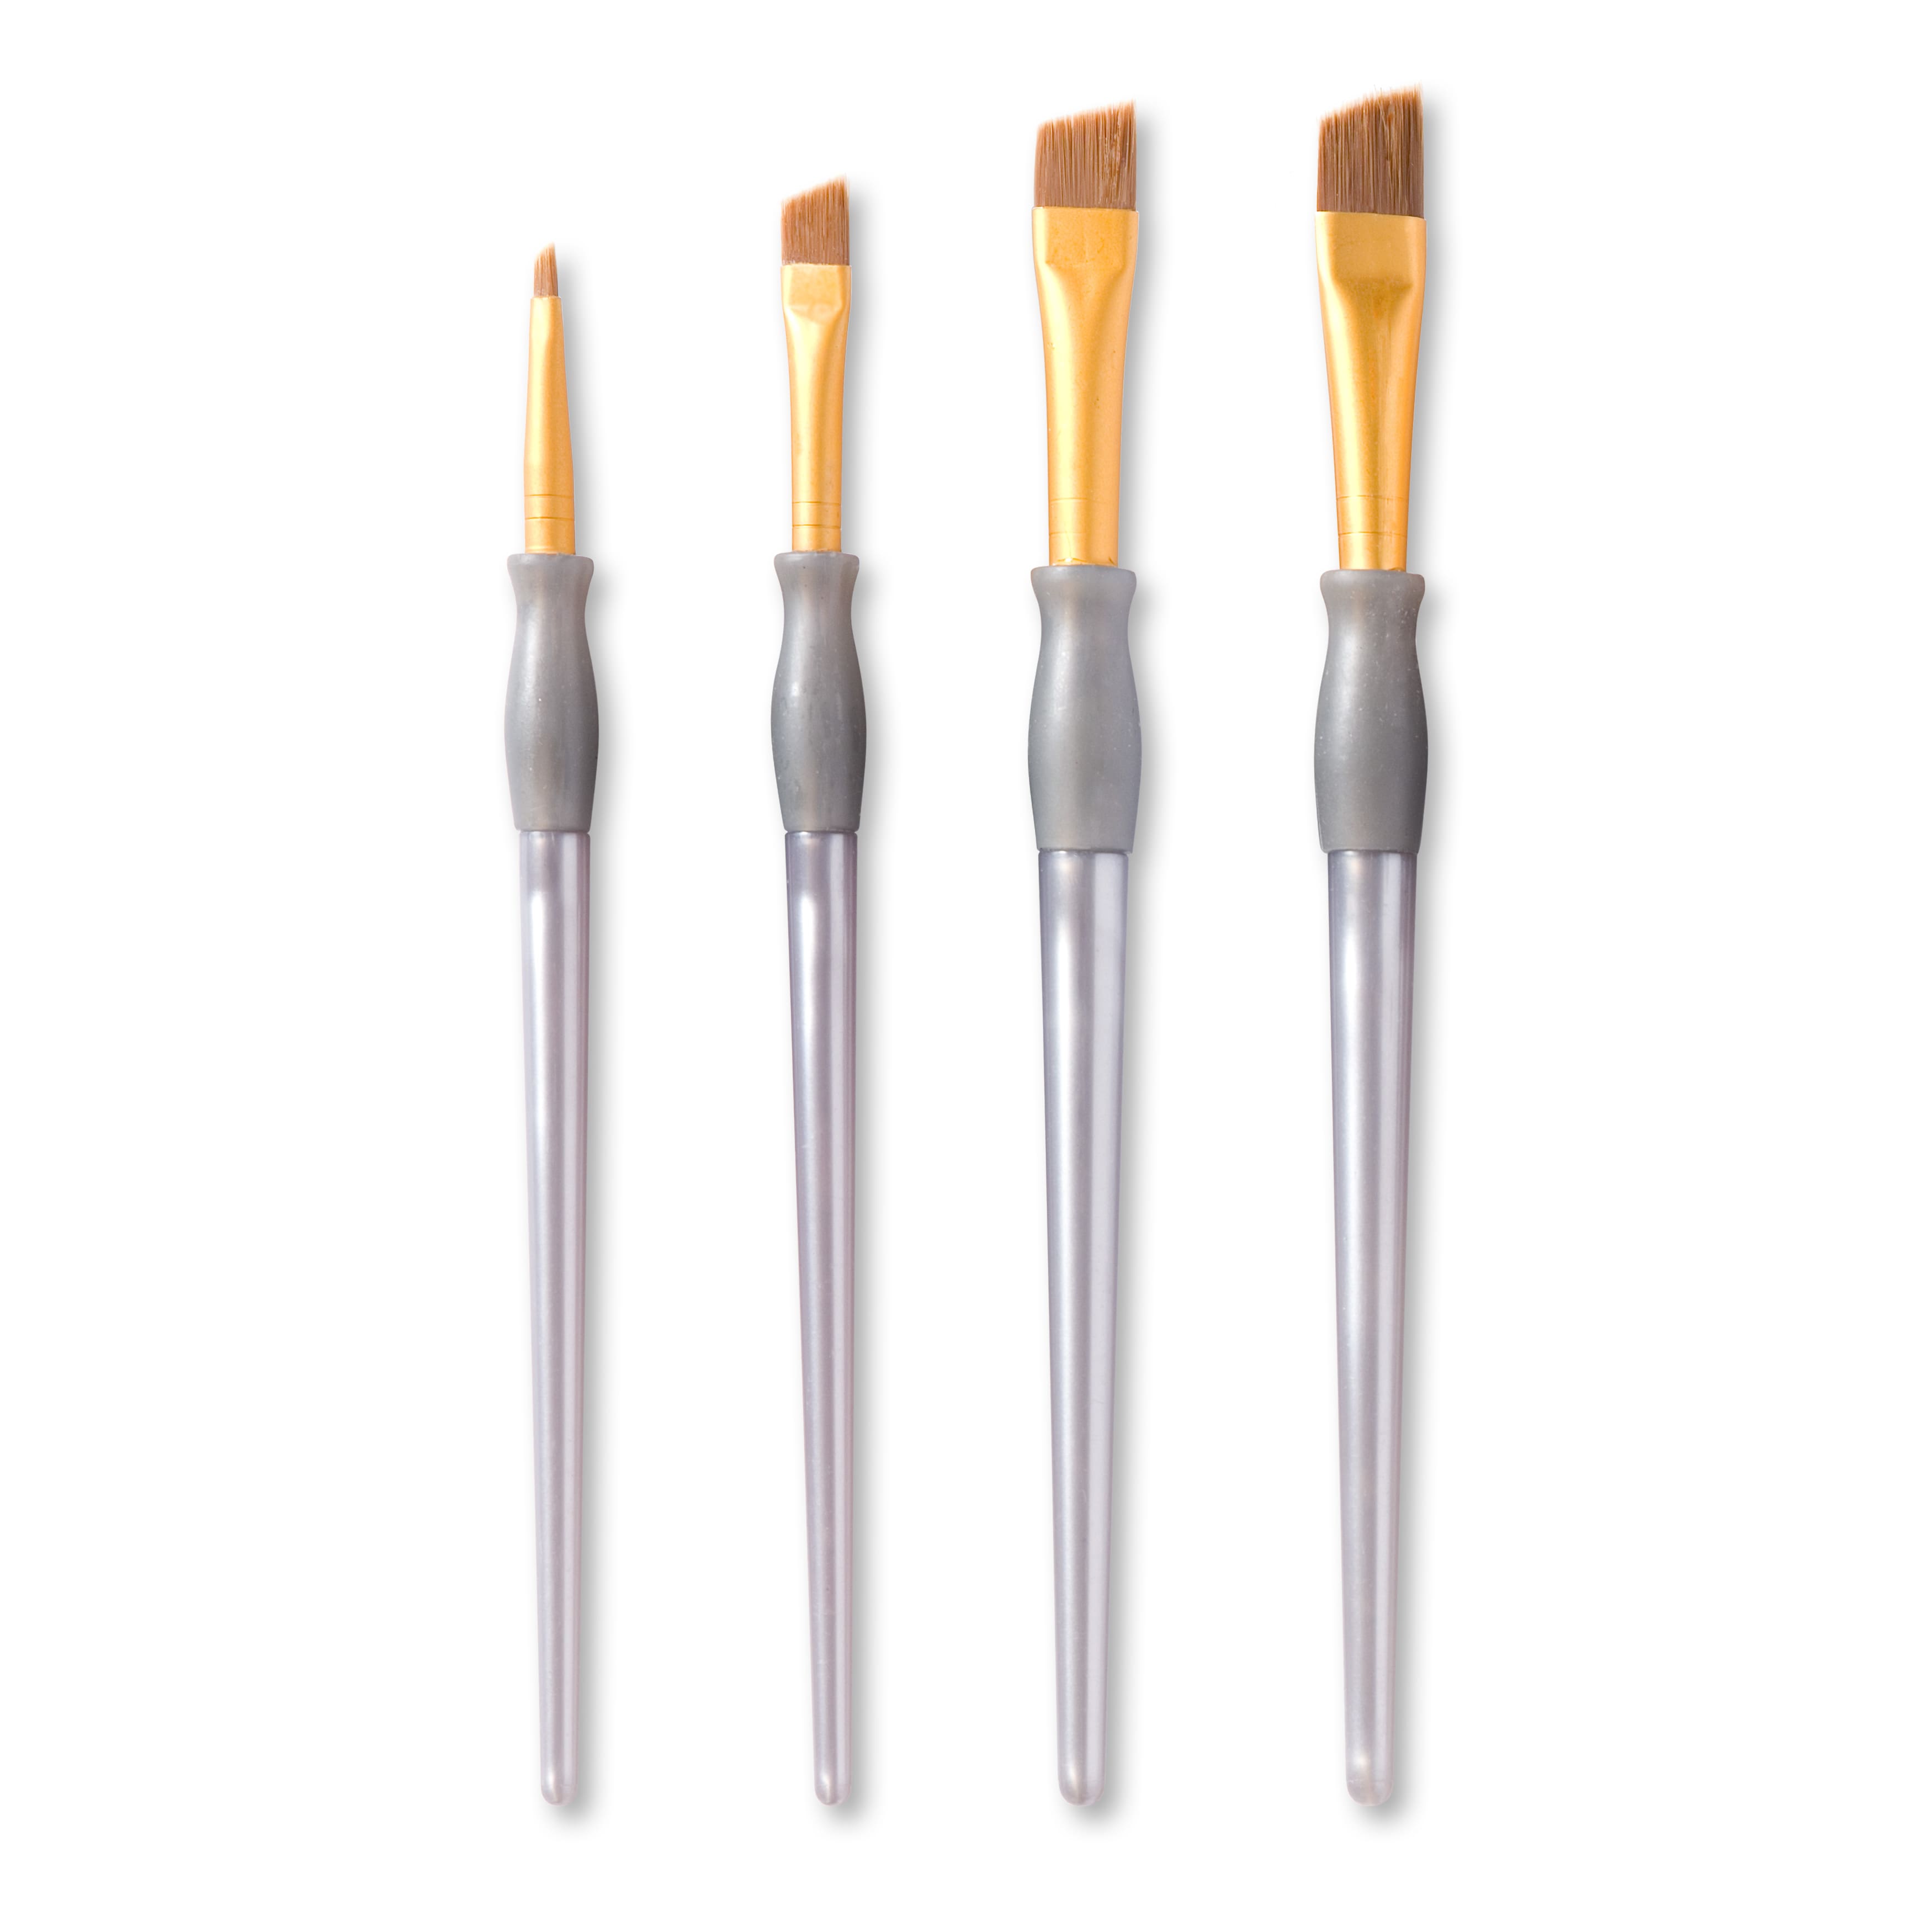 Brown Taklon Angular Brushes By Craft Smart&#xAE;